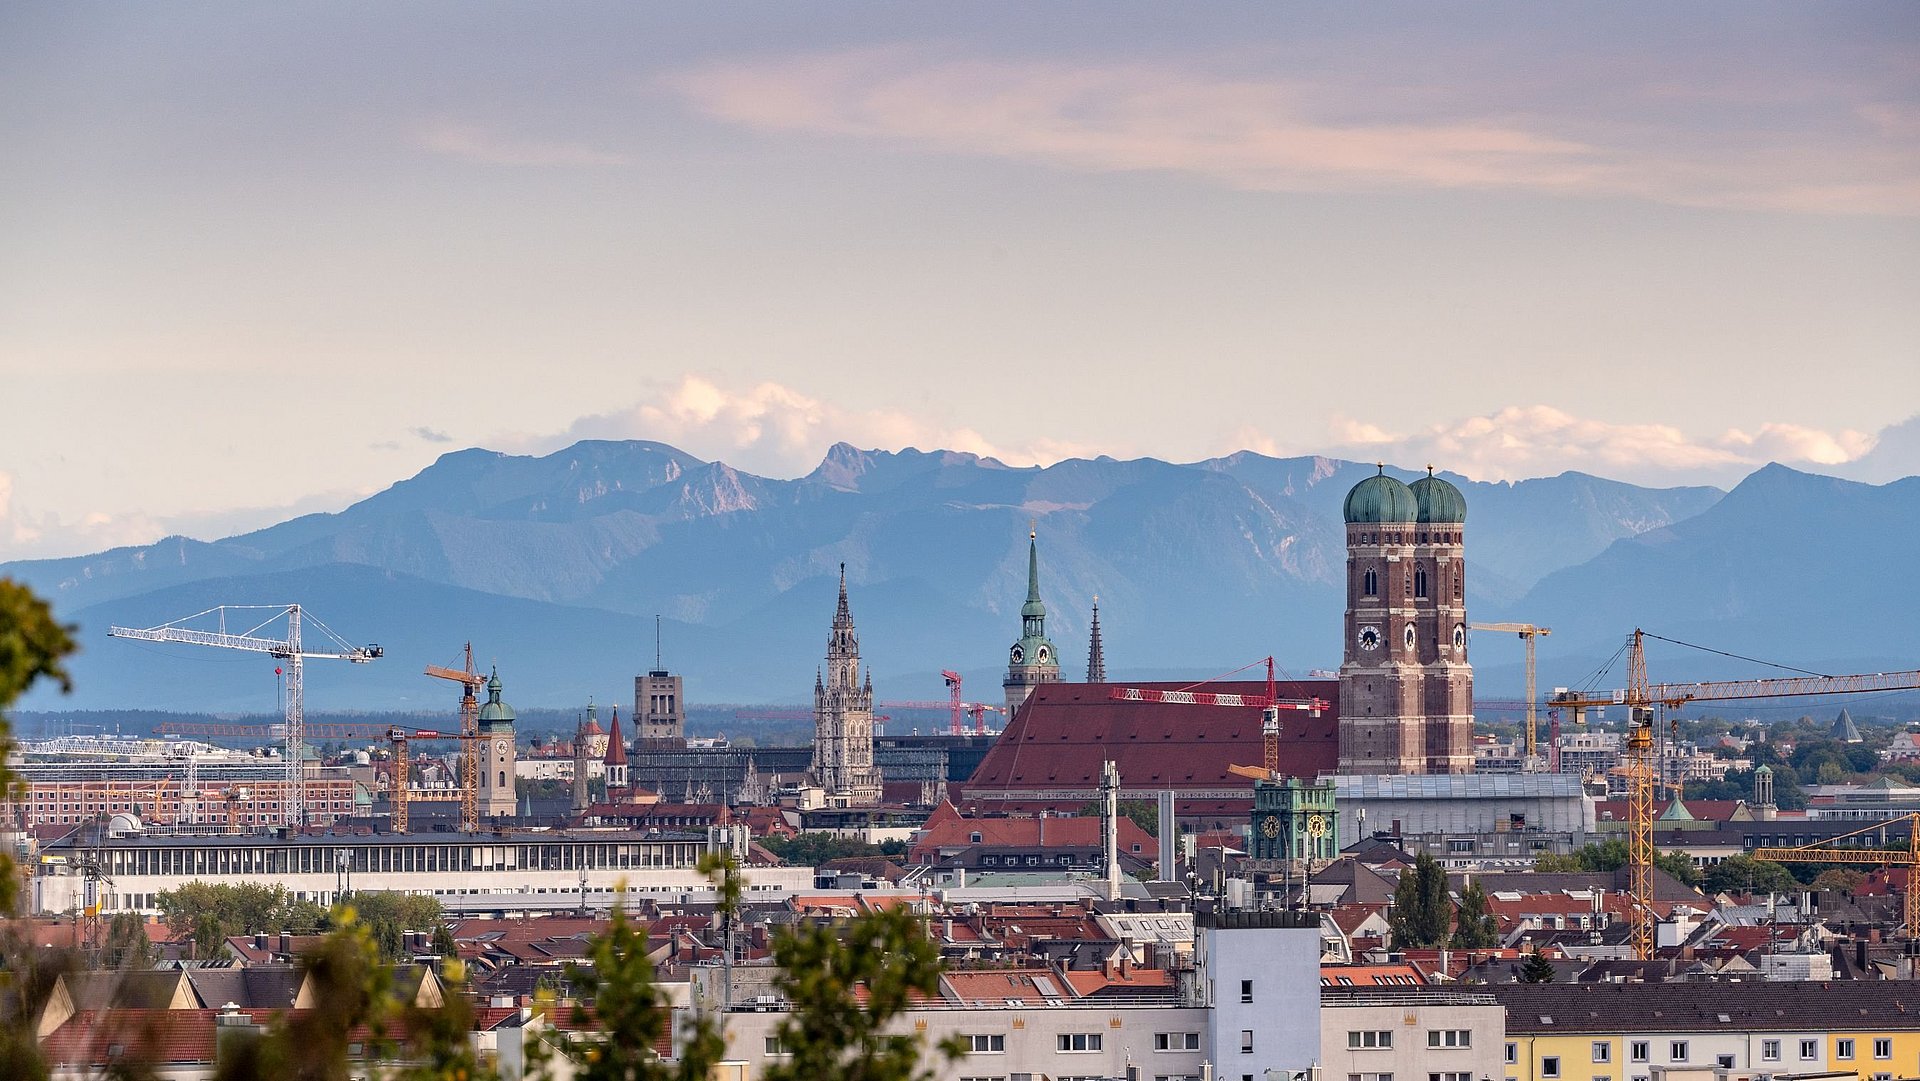 Eine Aufnahme der Stadt München von oben, die Frauenkirche prominent zeigt. Am Horizont sind die Alpen zu sehen.